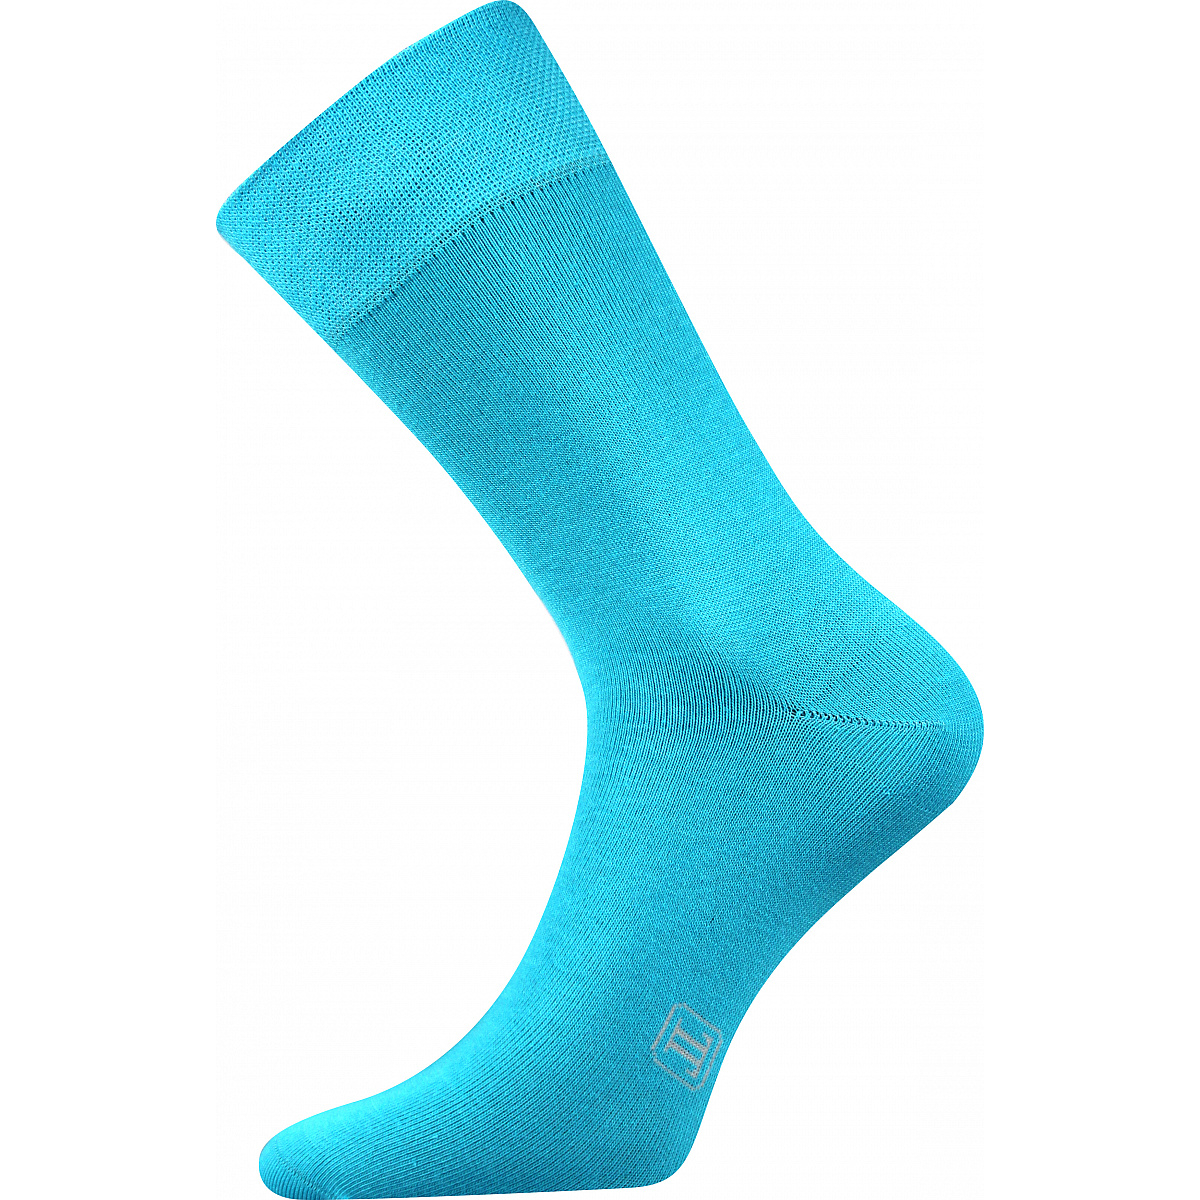 Ponožky pánské Lonka Decolor - světle tyrkysové, 43-46